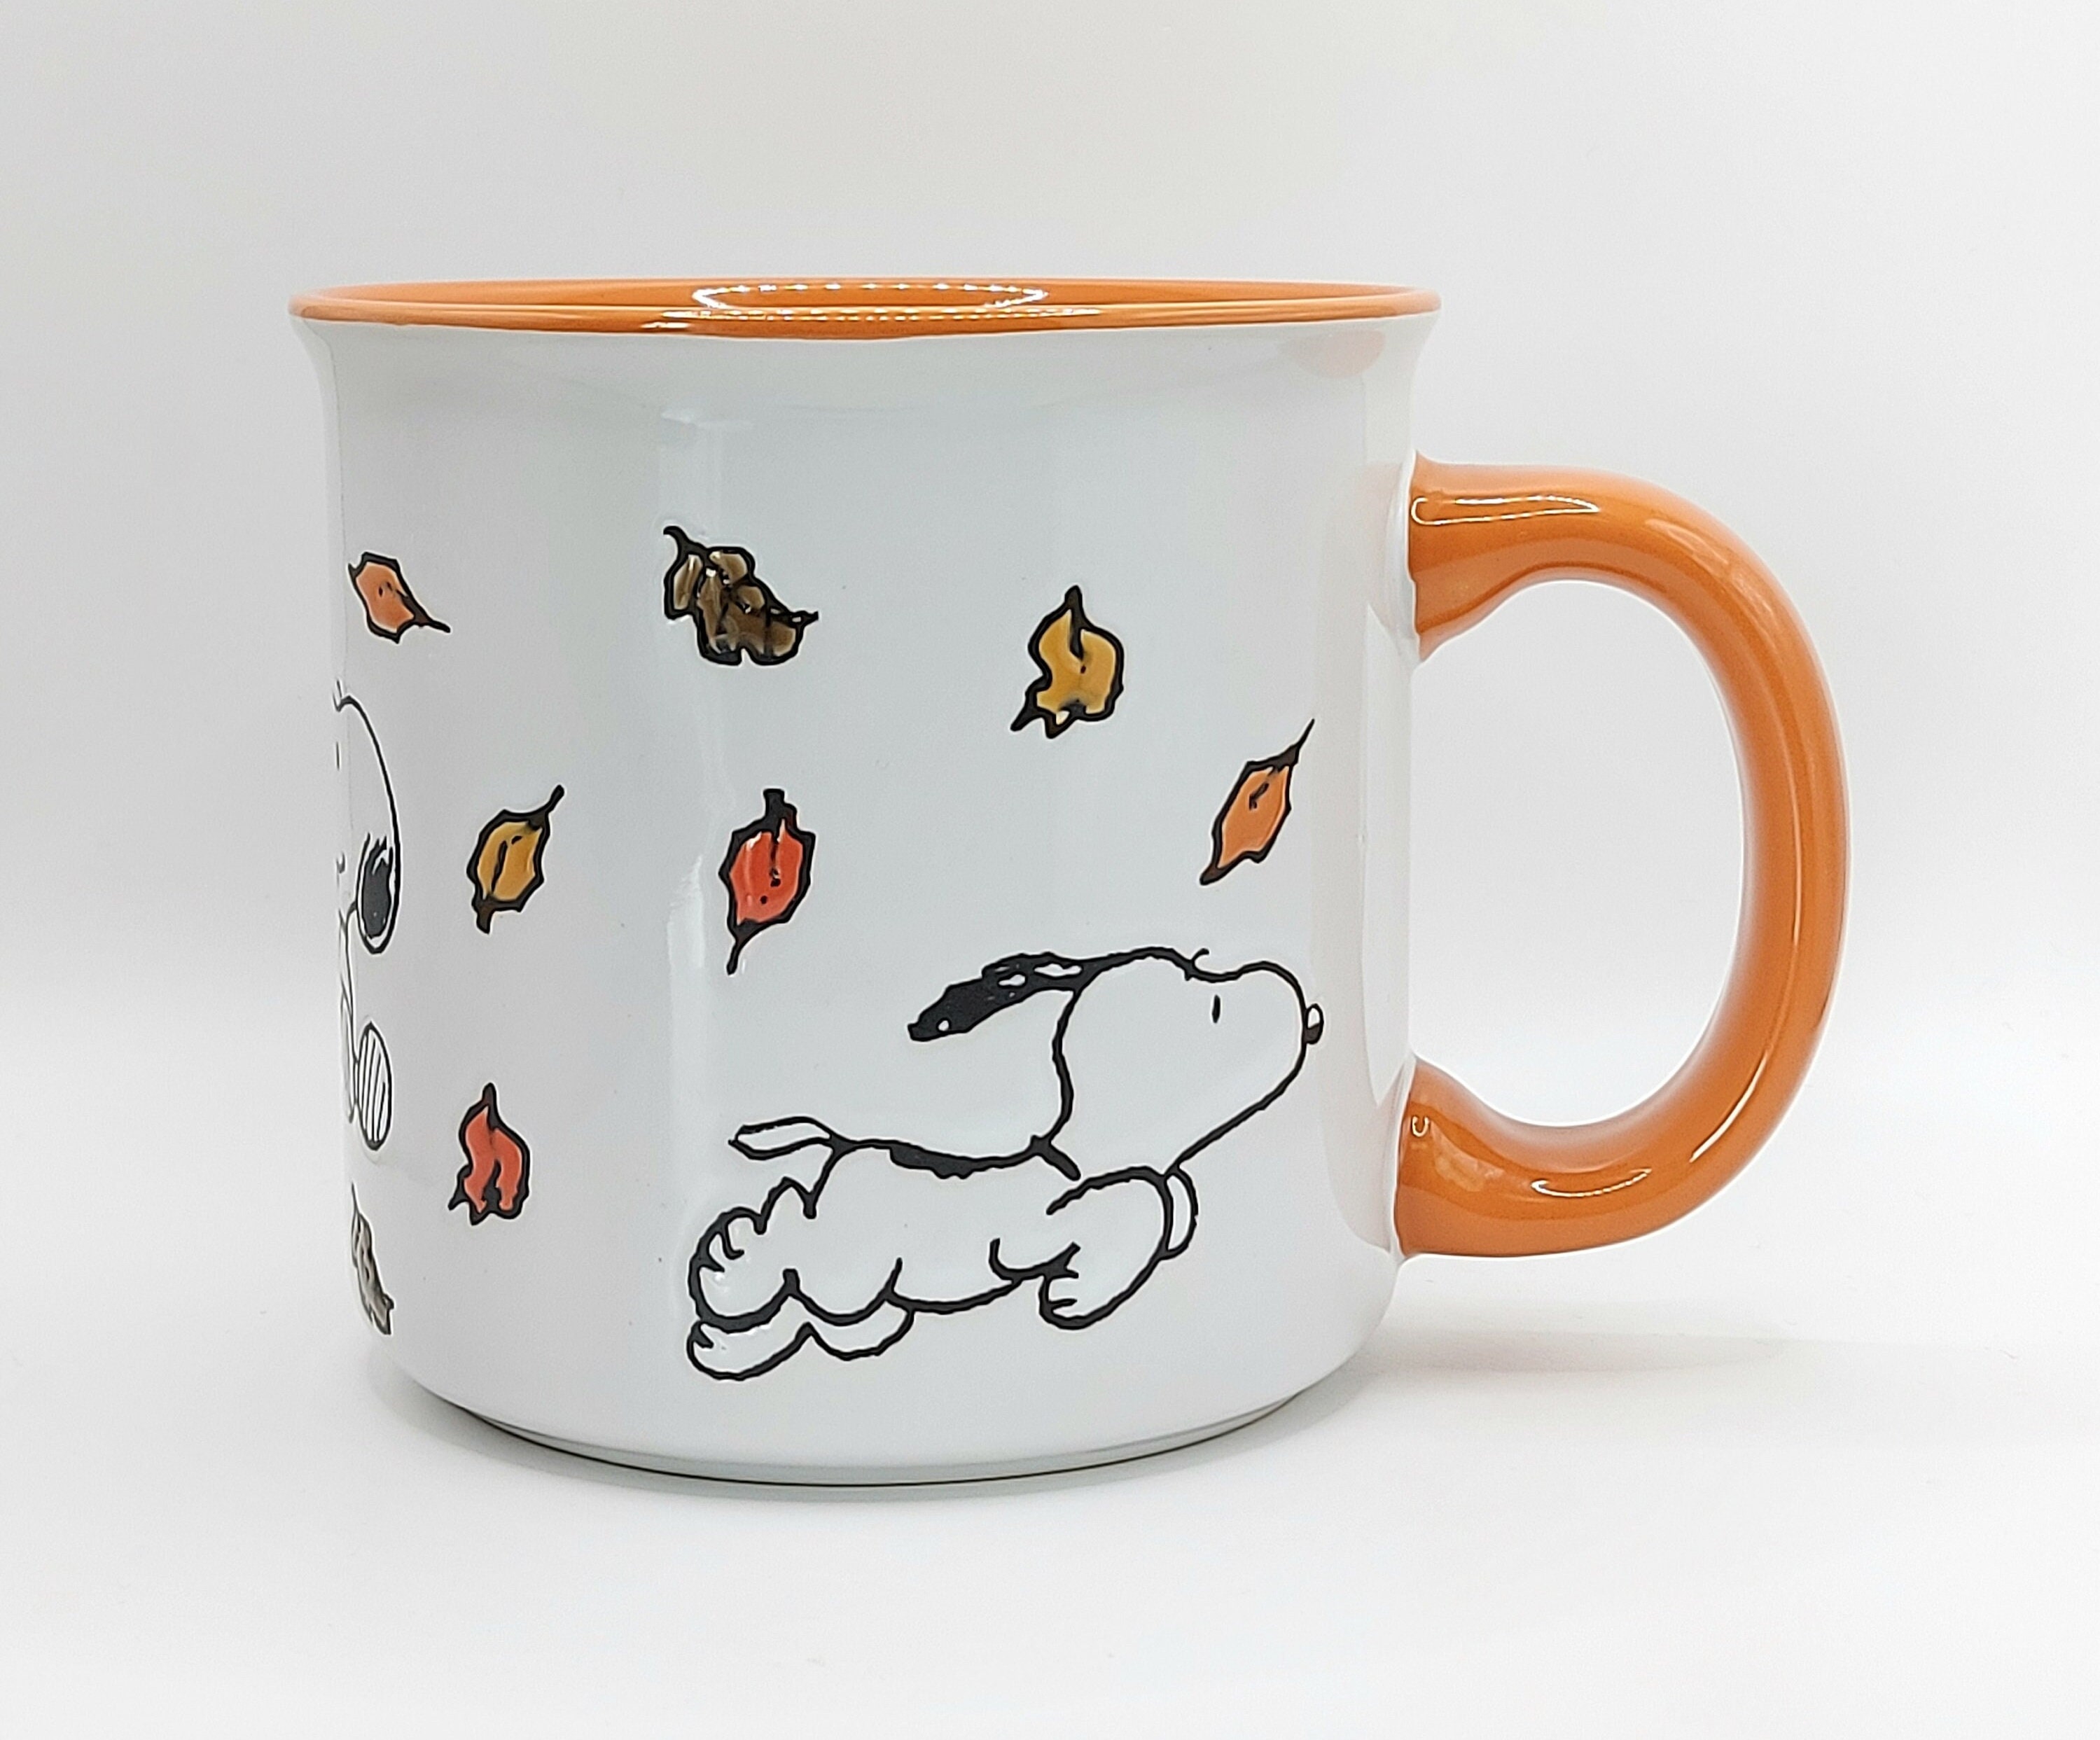 Charlie Brown Tumbler Cup Unique Snoopy Linus Van Pelt Gift